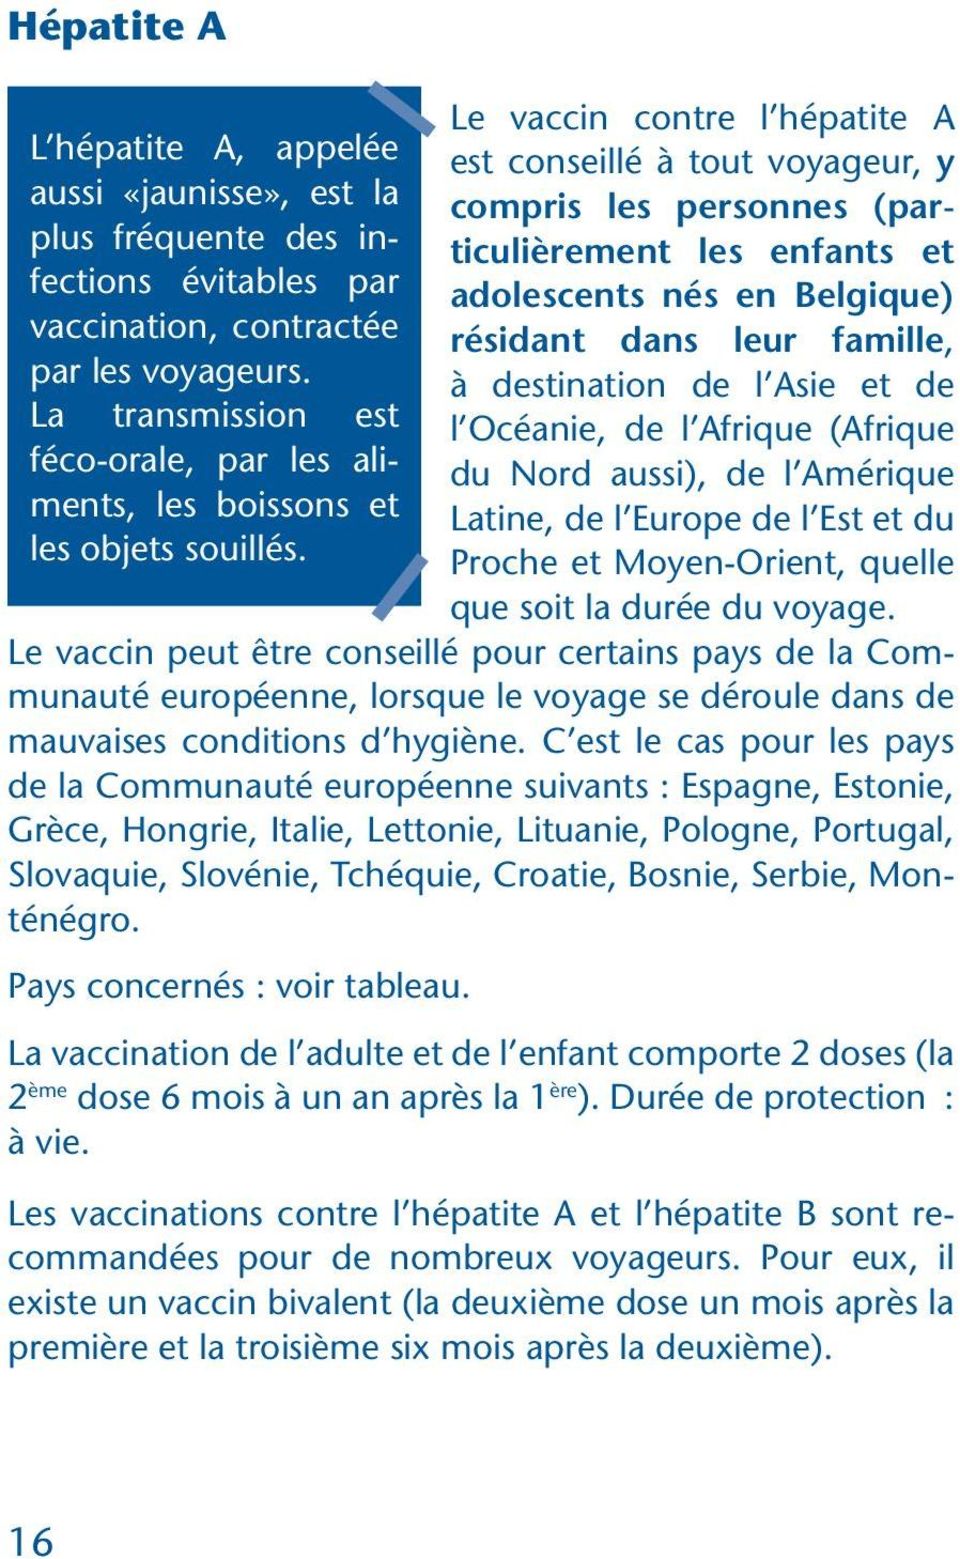 Le vaccin contre l hépatite A est conseillé à tout voyageur, y compris les personnes (particulièrement les enfants et adolescents nés en Belgique) résidant dans leur famille, à destination de l Asie